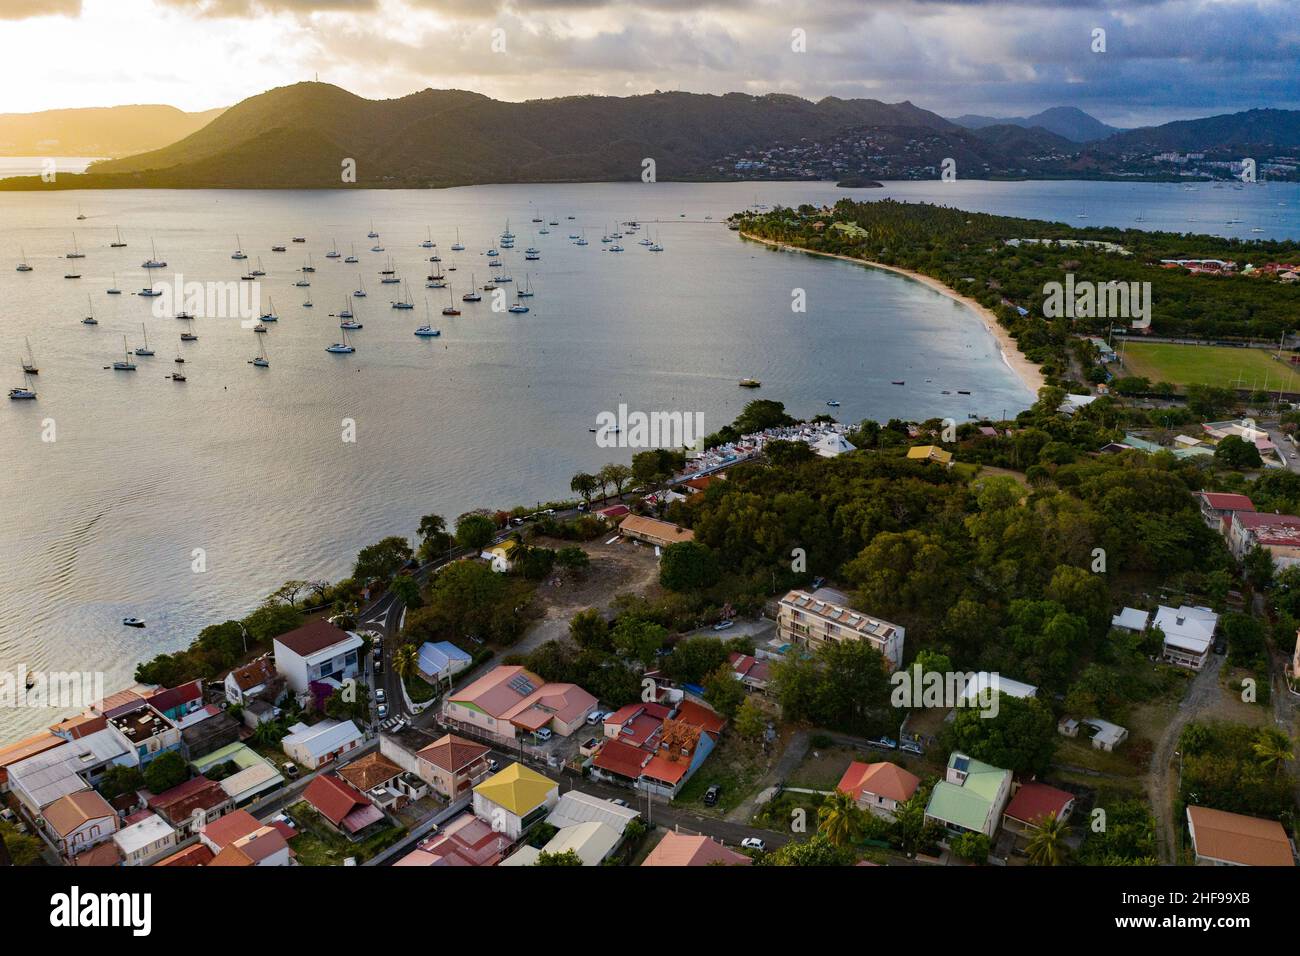 Sainte-Anne est la commune la plus au sud de la Martinique. Elle surplombe la magnifique baie qui acceuille un Grand nombre de bareaux Stockfoto